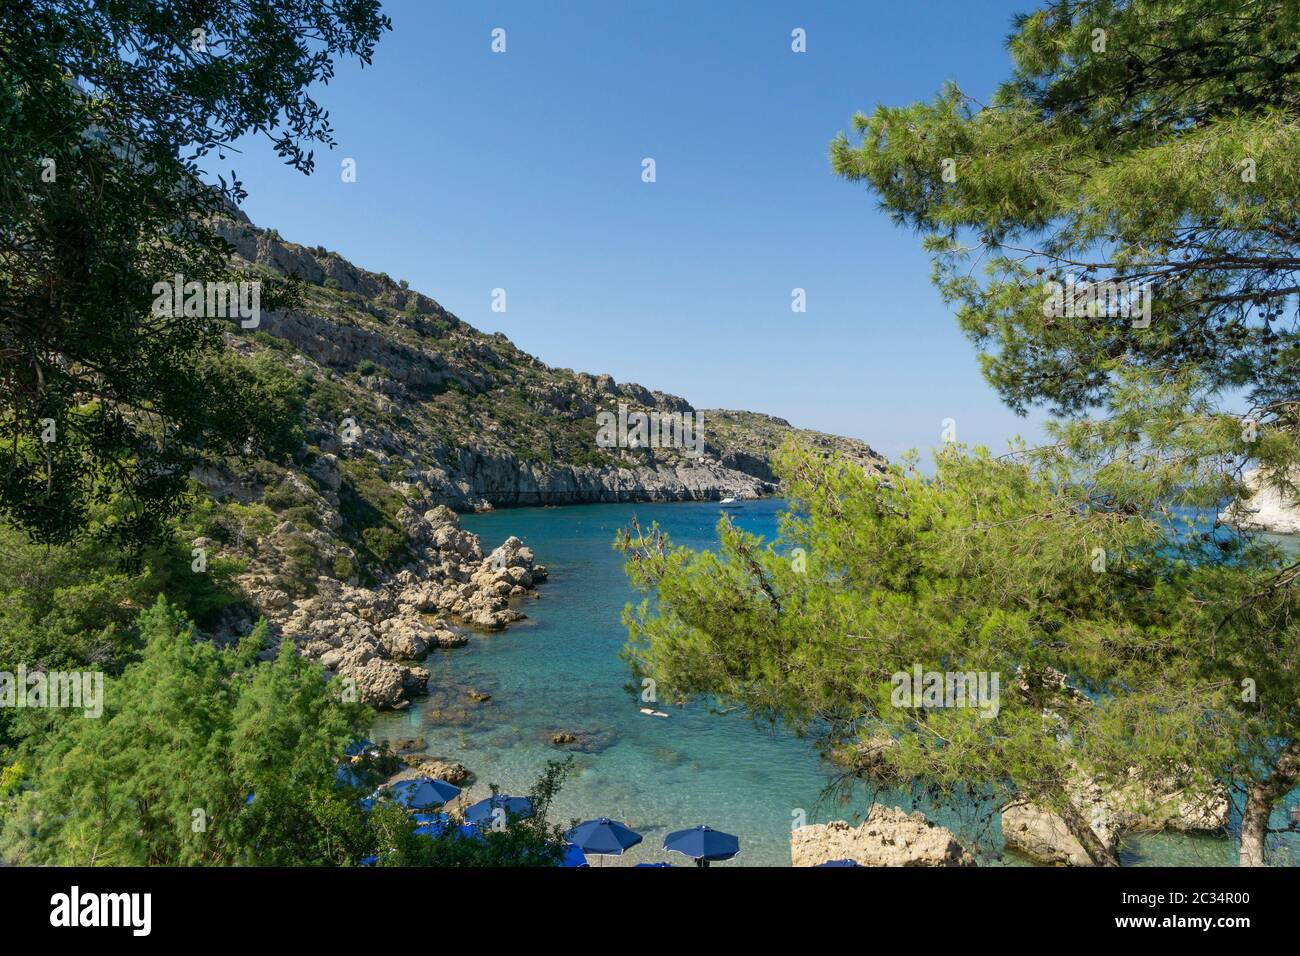 Anthony-Quinn-Bucht Heute ist der nome gebräuchliche für die Vagies-Bucht an der Ostküste der griechischen Insel Rhodos. Foto Stock